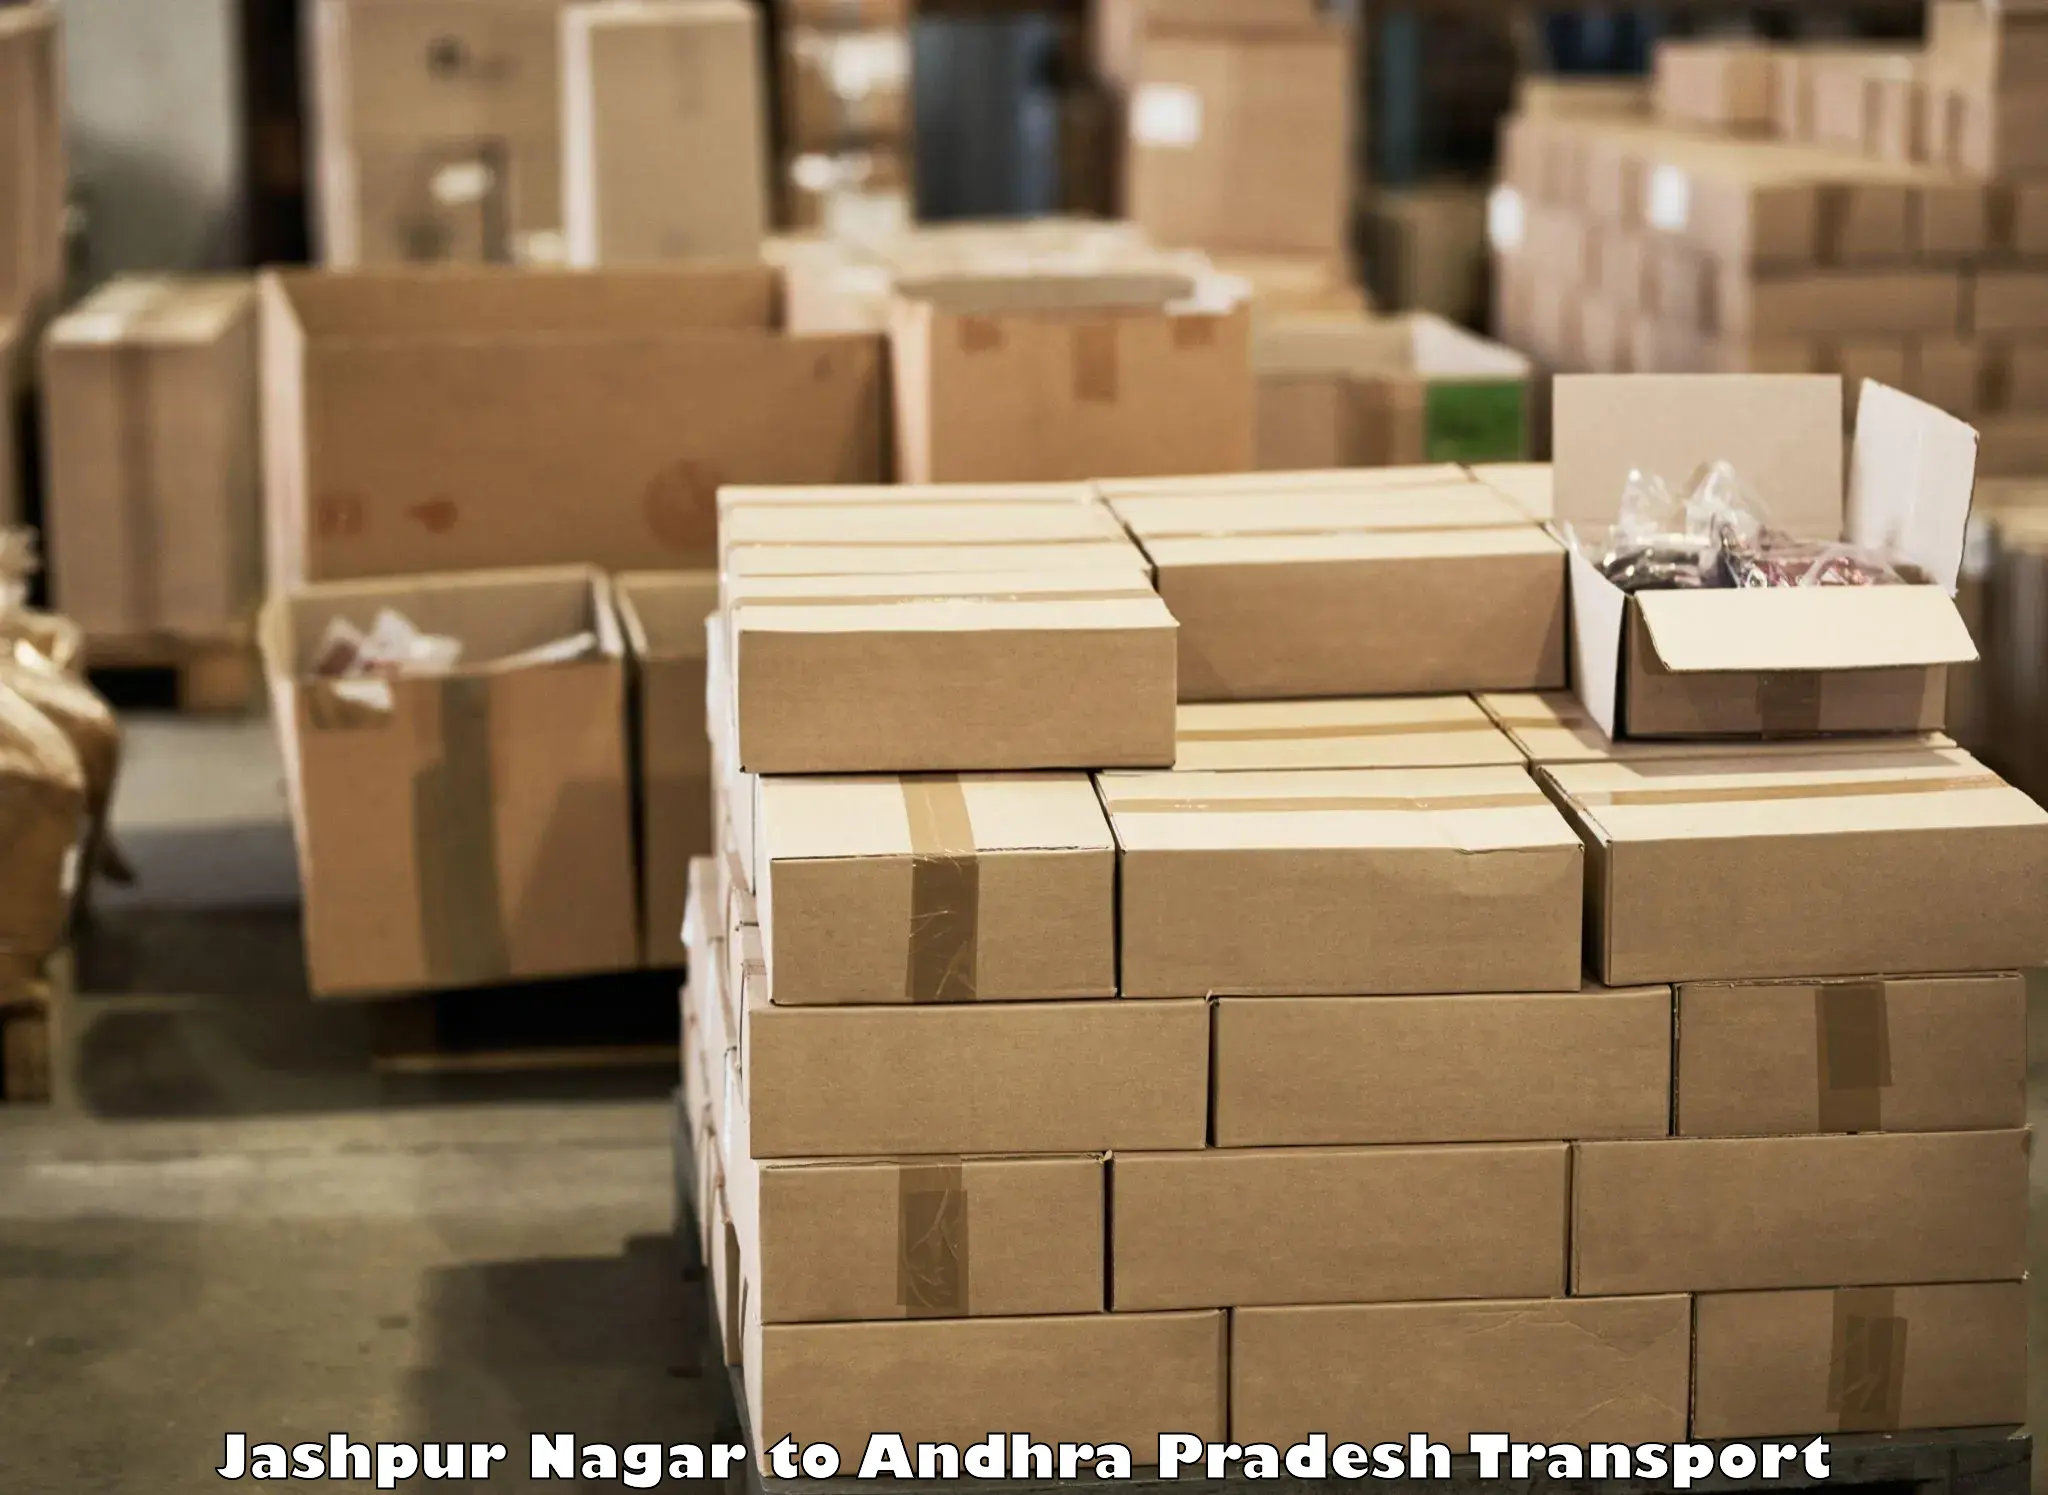 Furniture transport service Jashpur Nagar to IIIT Chittoor